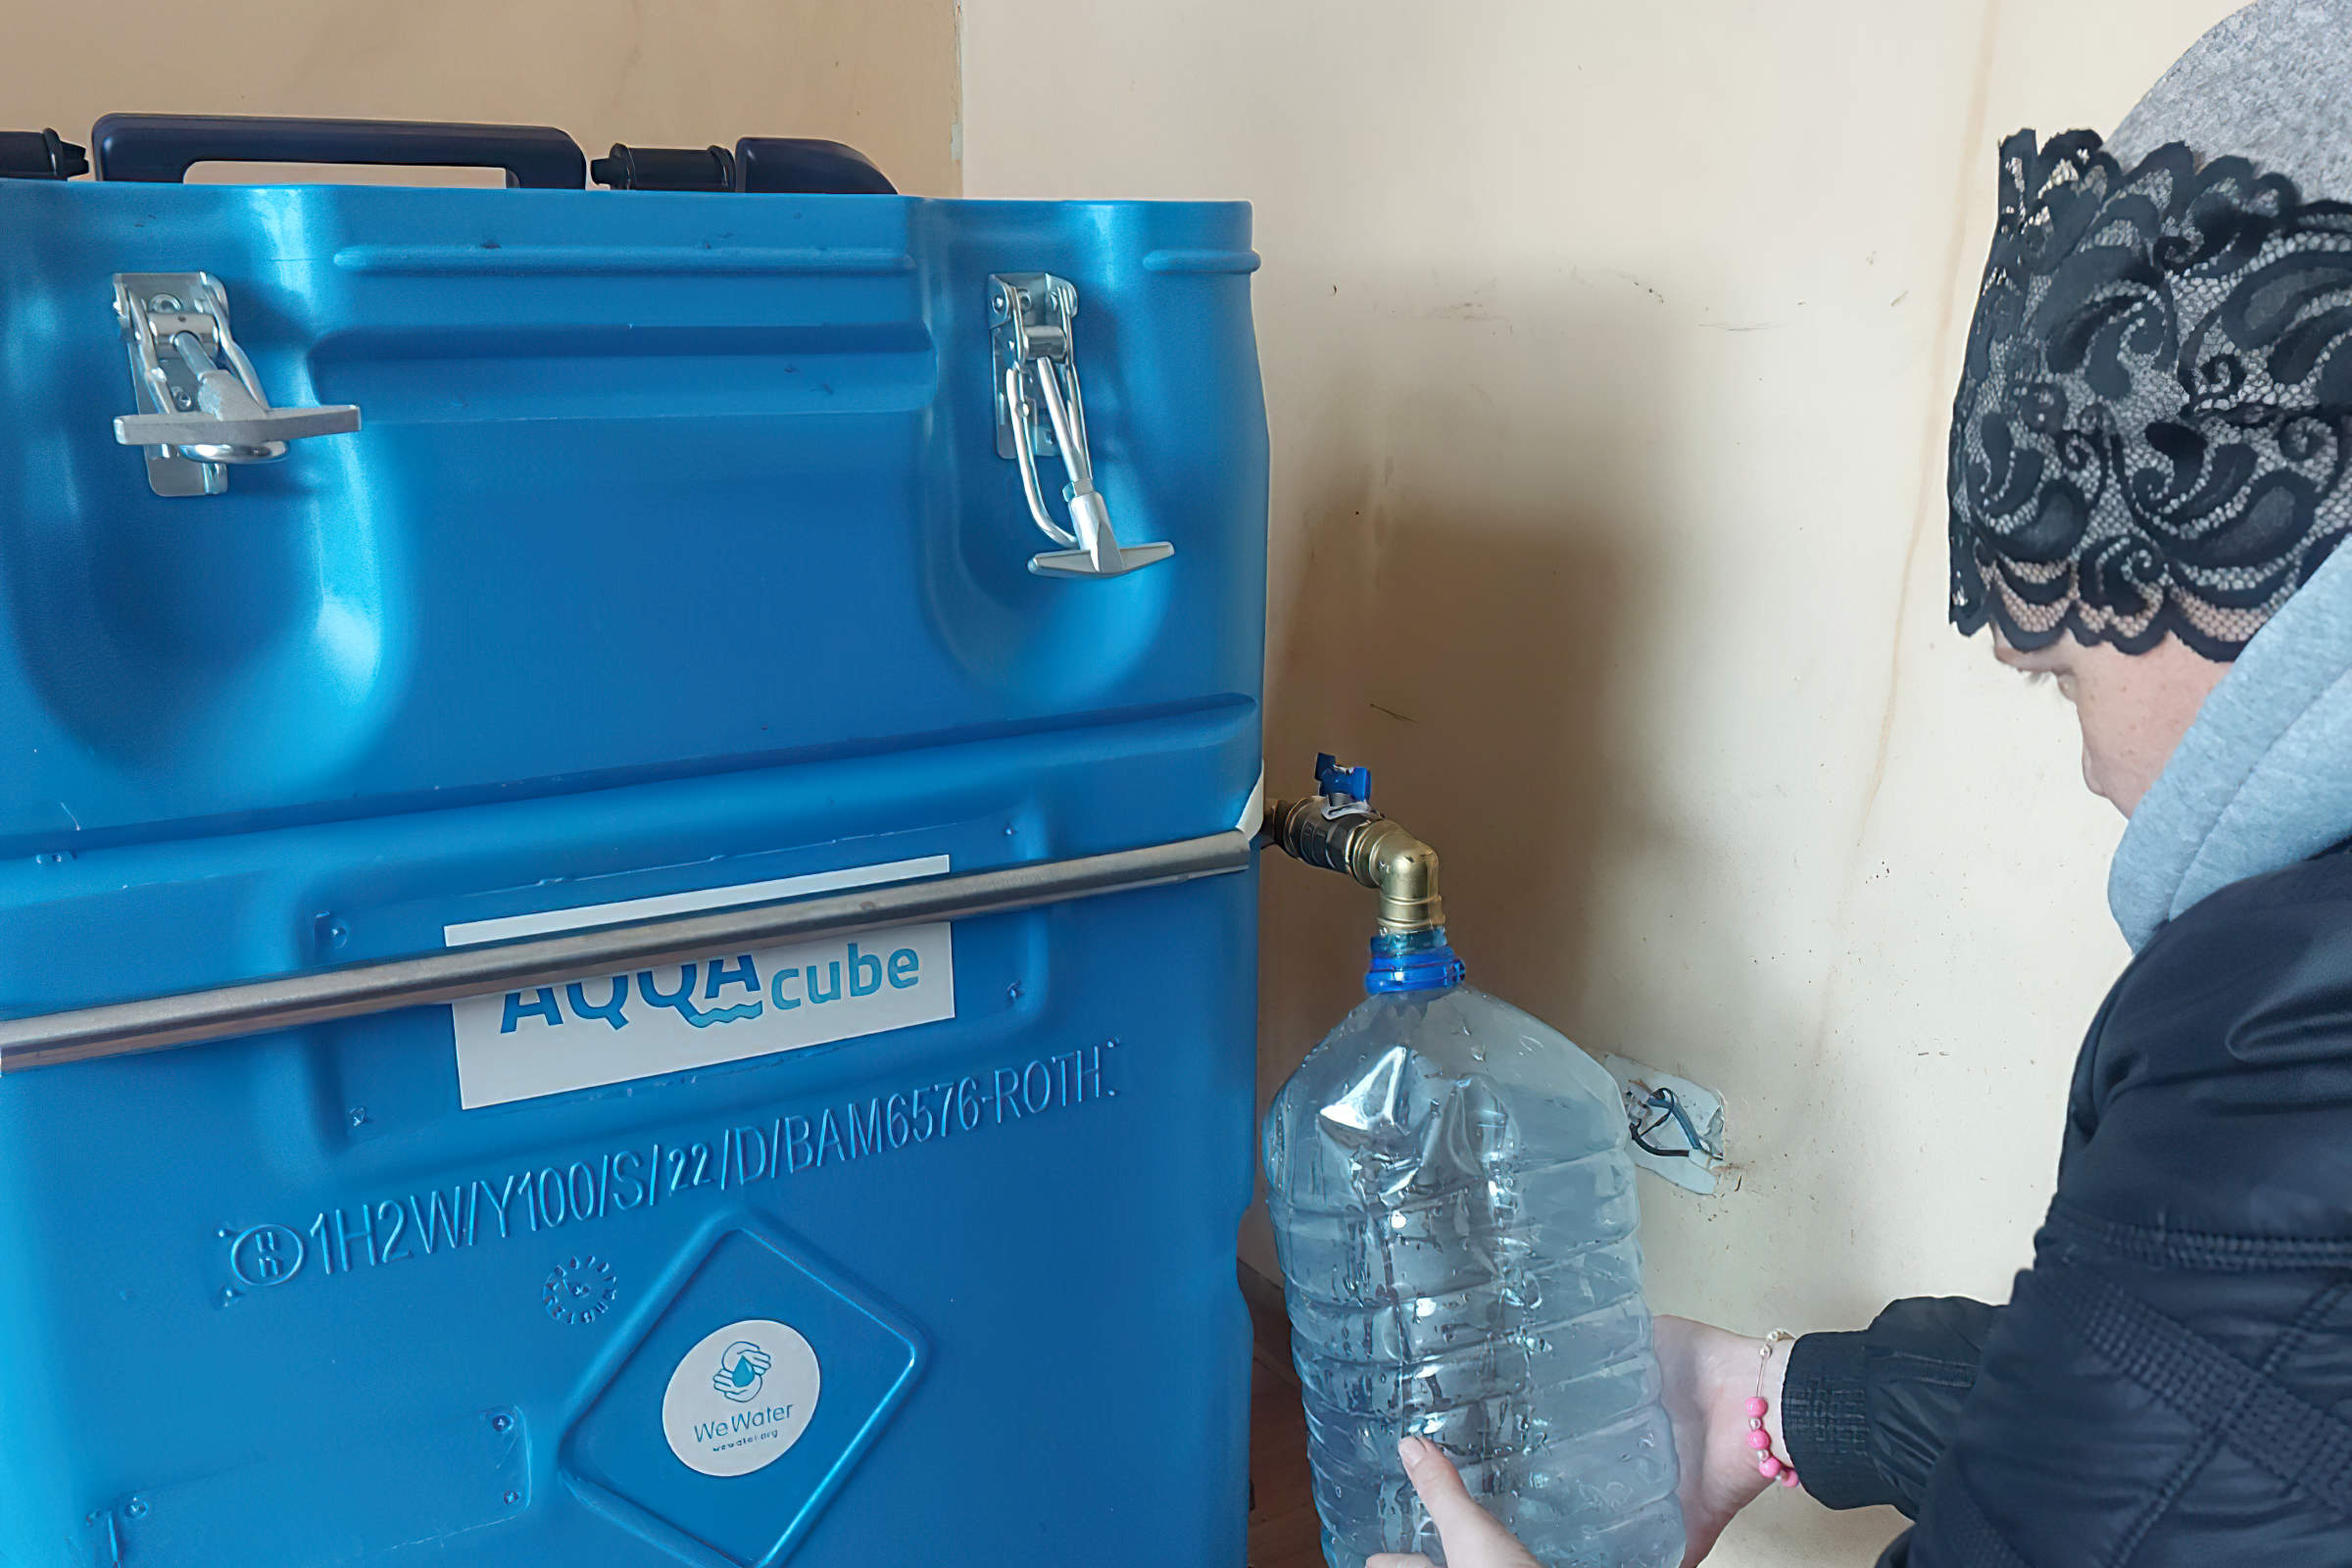 Frau füllt Wasser aus einem Filter in einen transparenten Wasserkanister